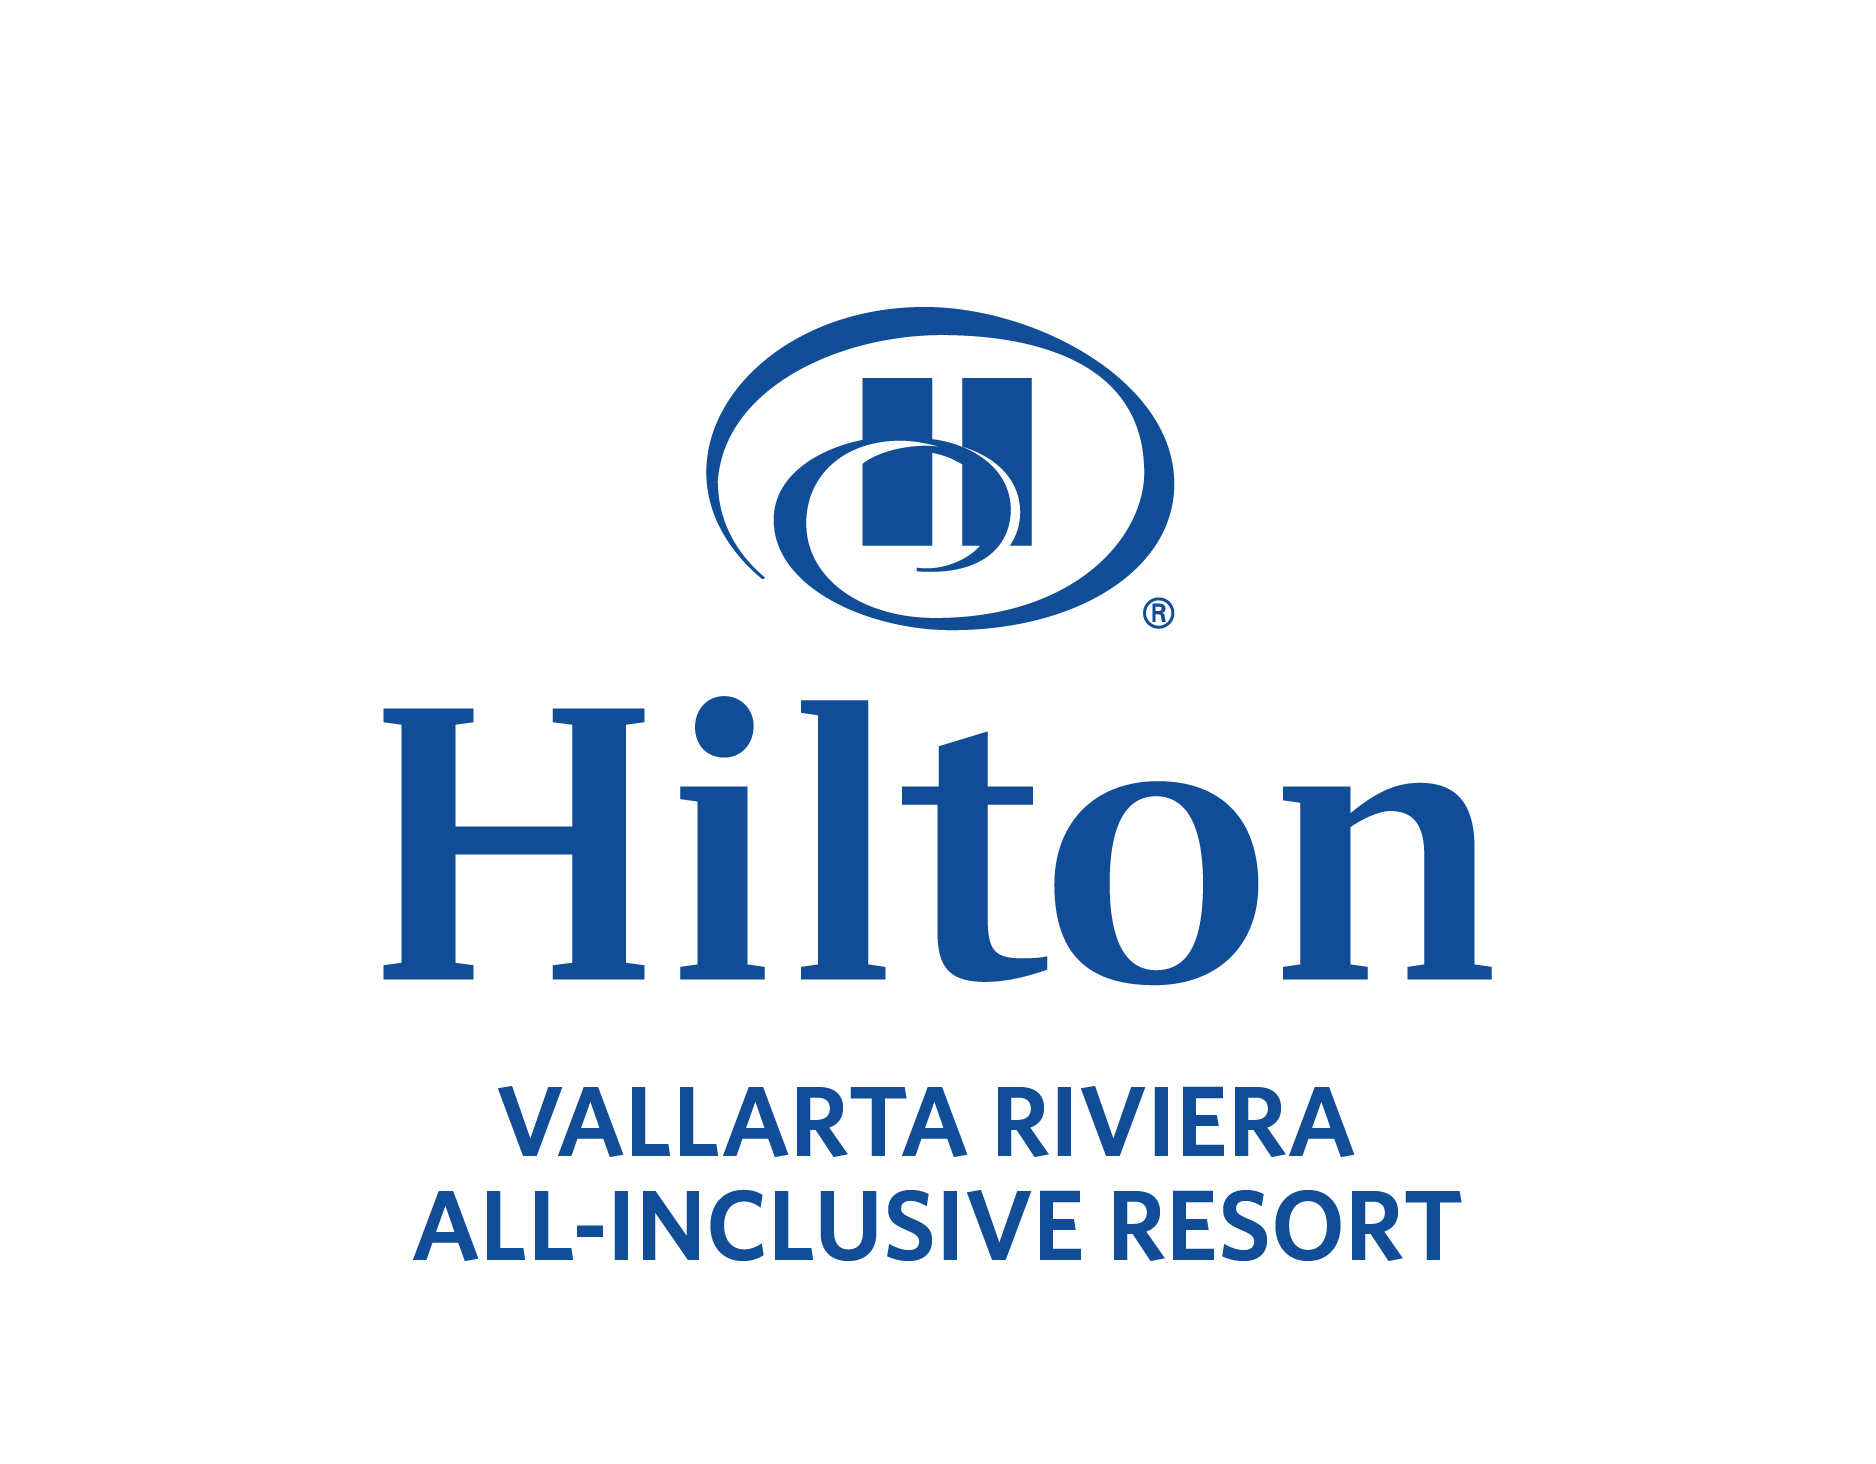 Hilton Vallarta Riviera logo